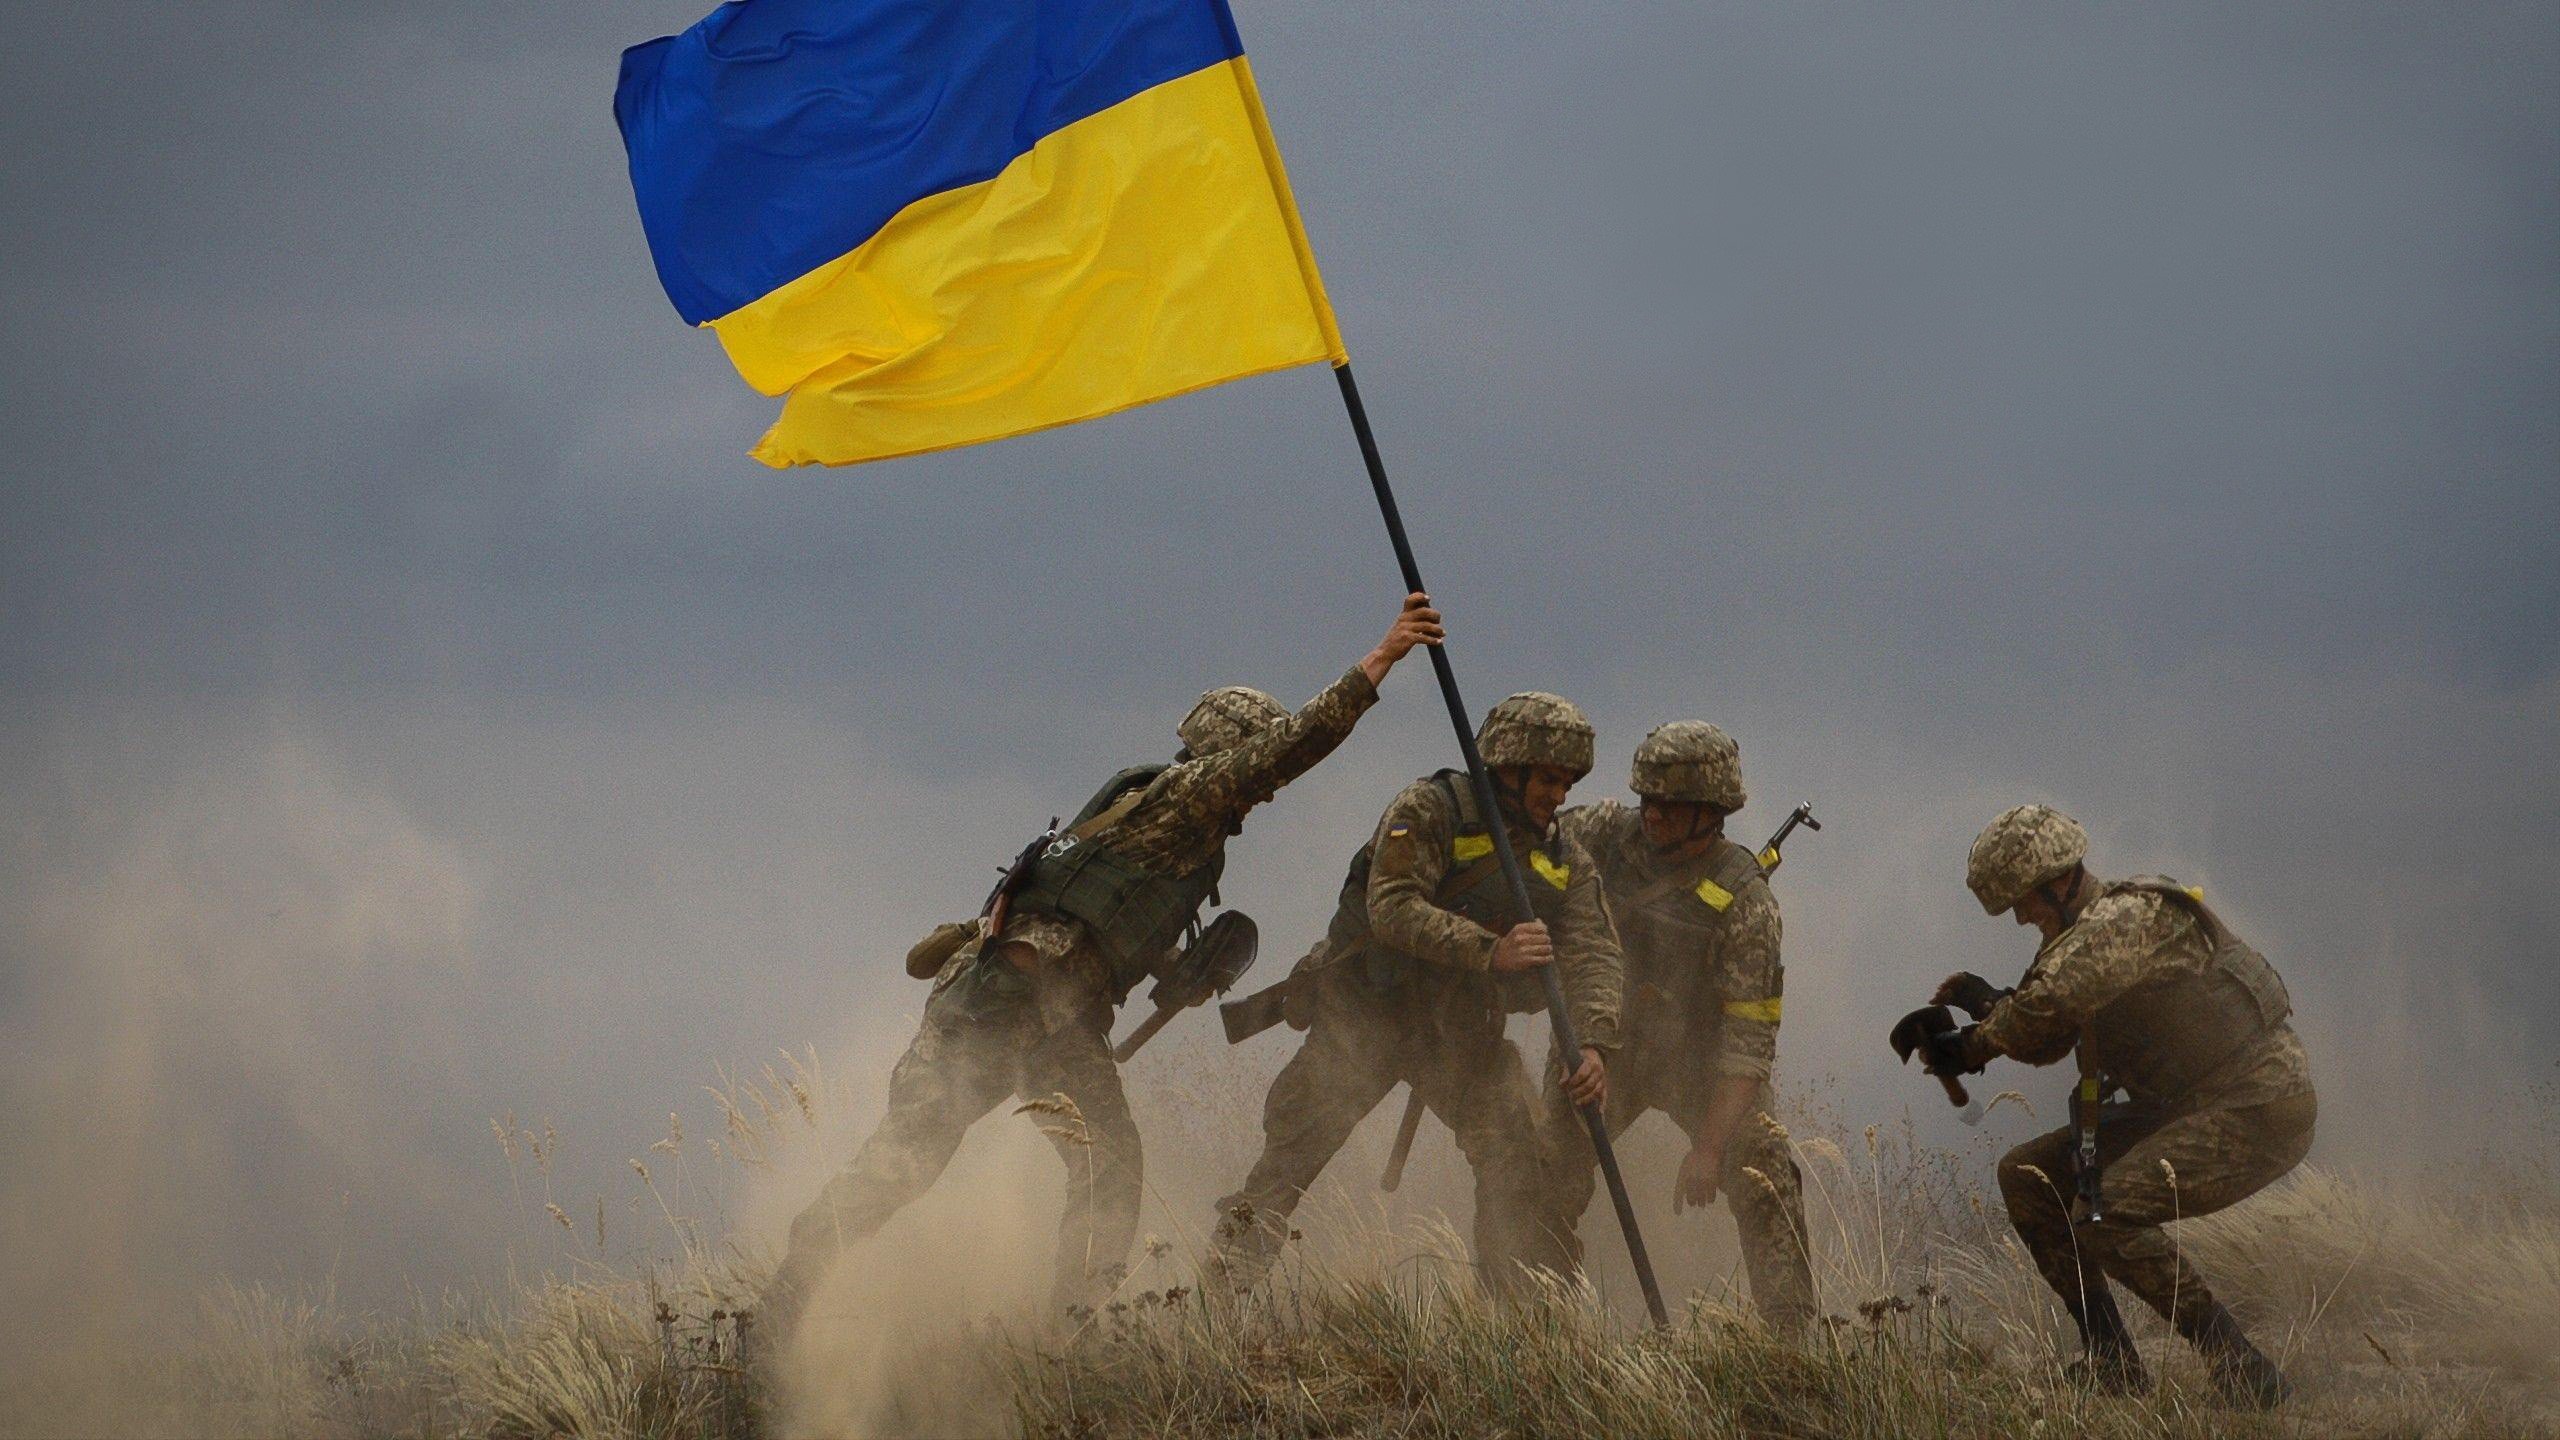 Fondos de pantalla Soldiers in Ukraine